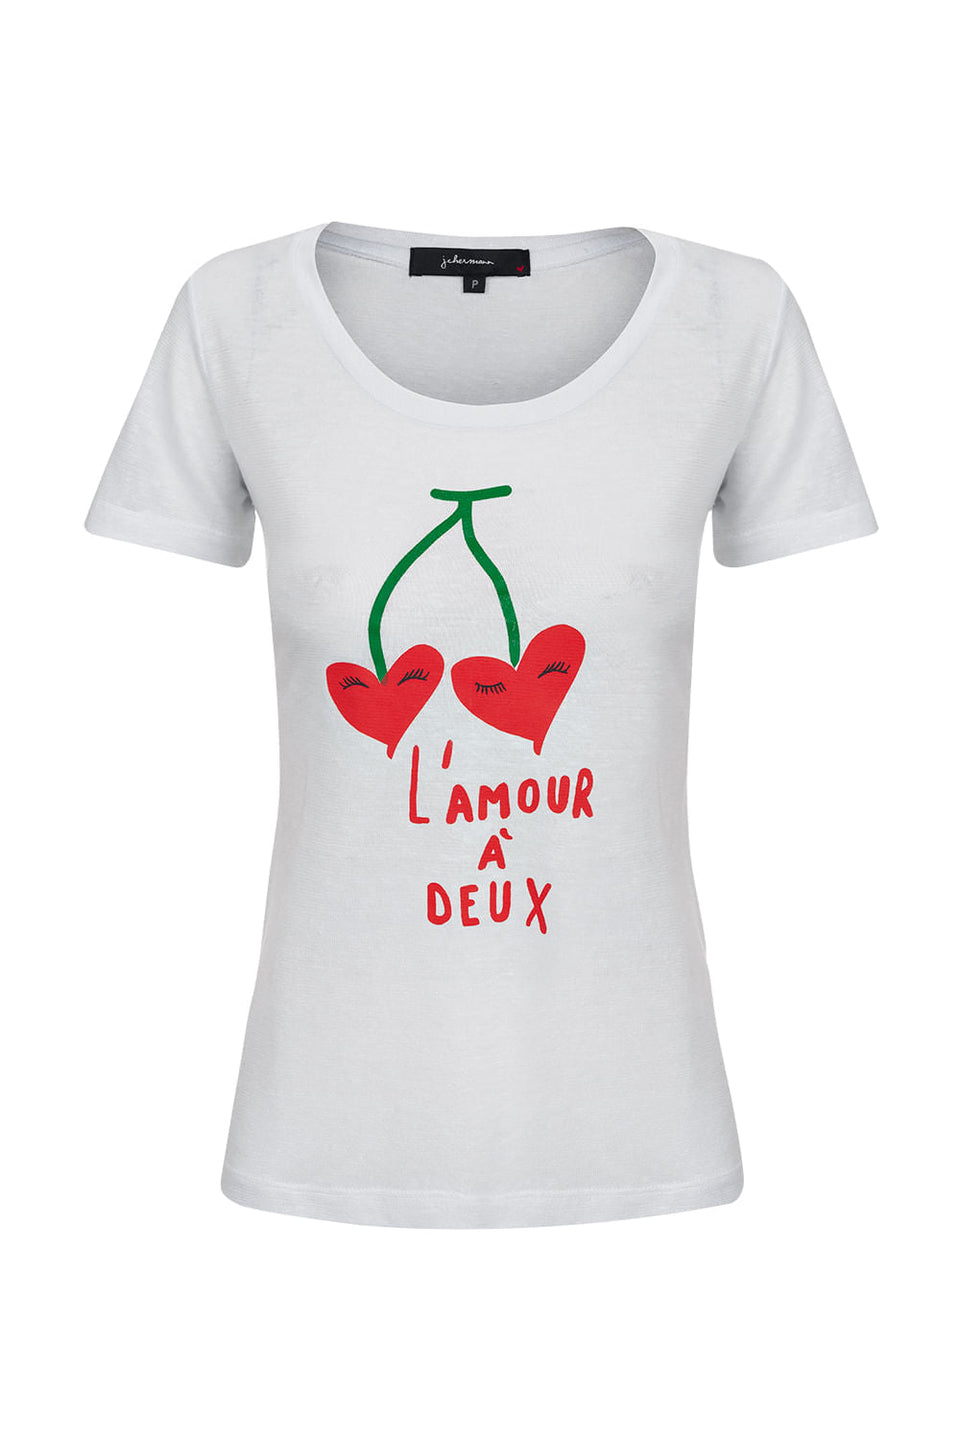 Camiseta L'amour A Deux Branco